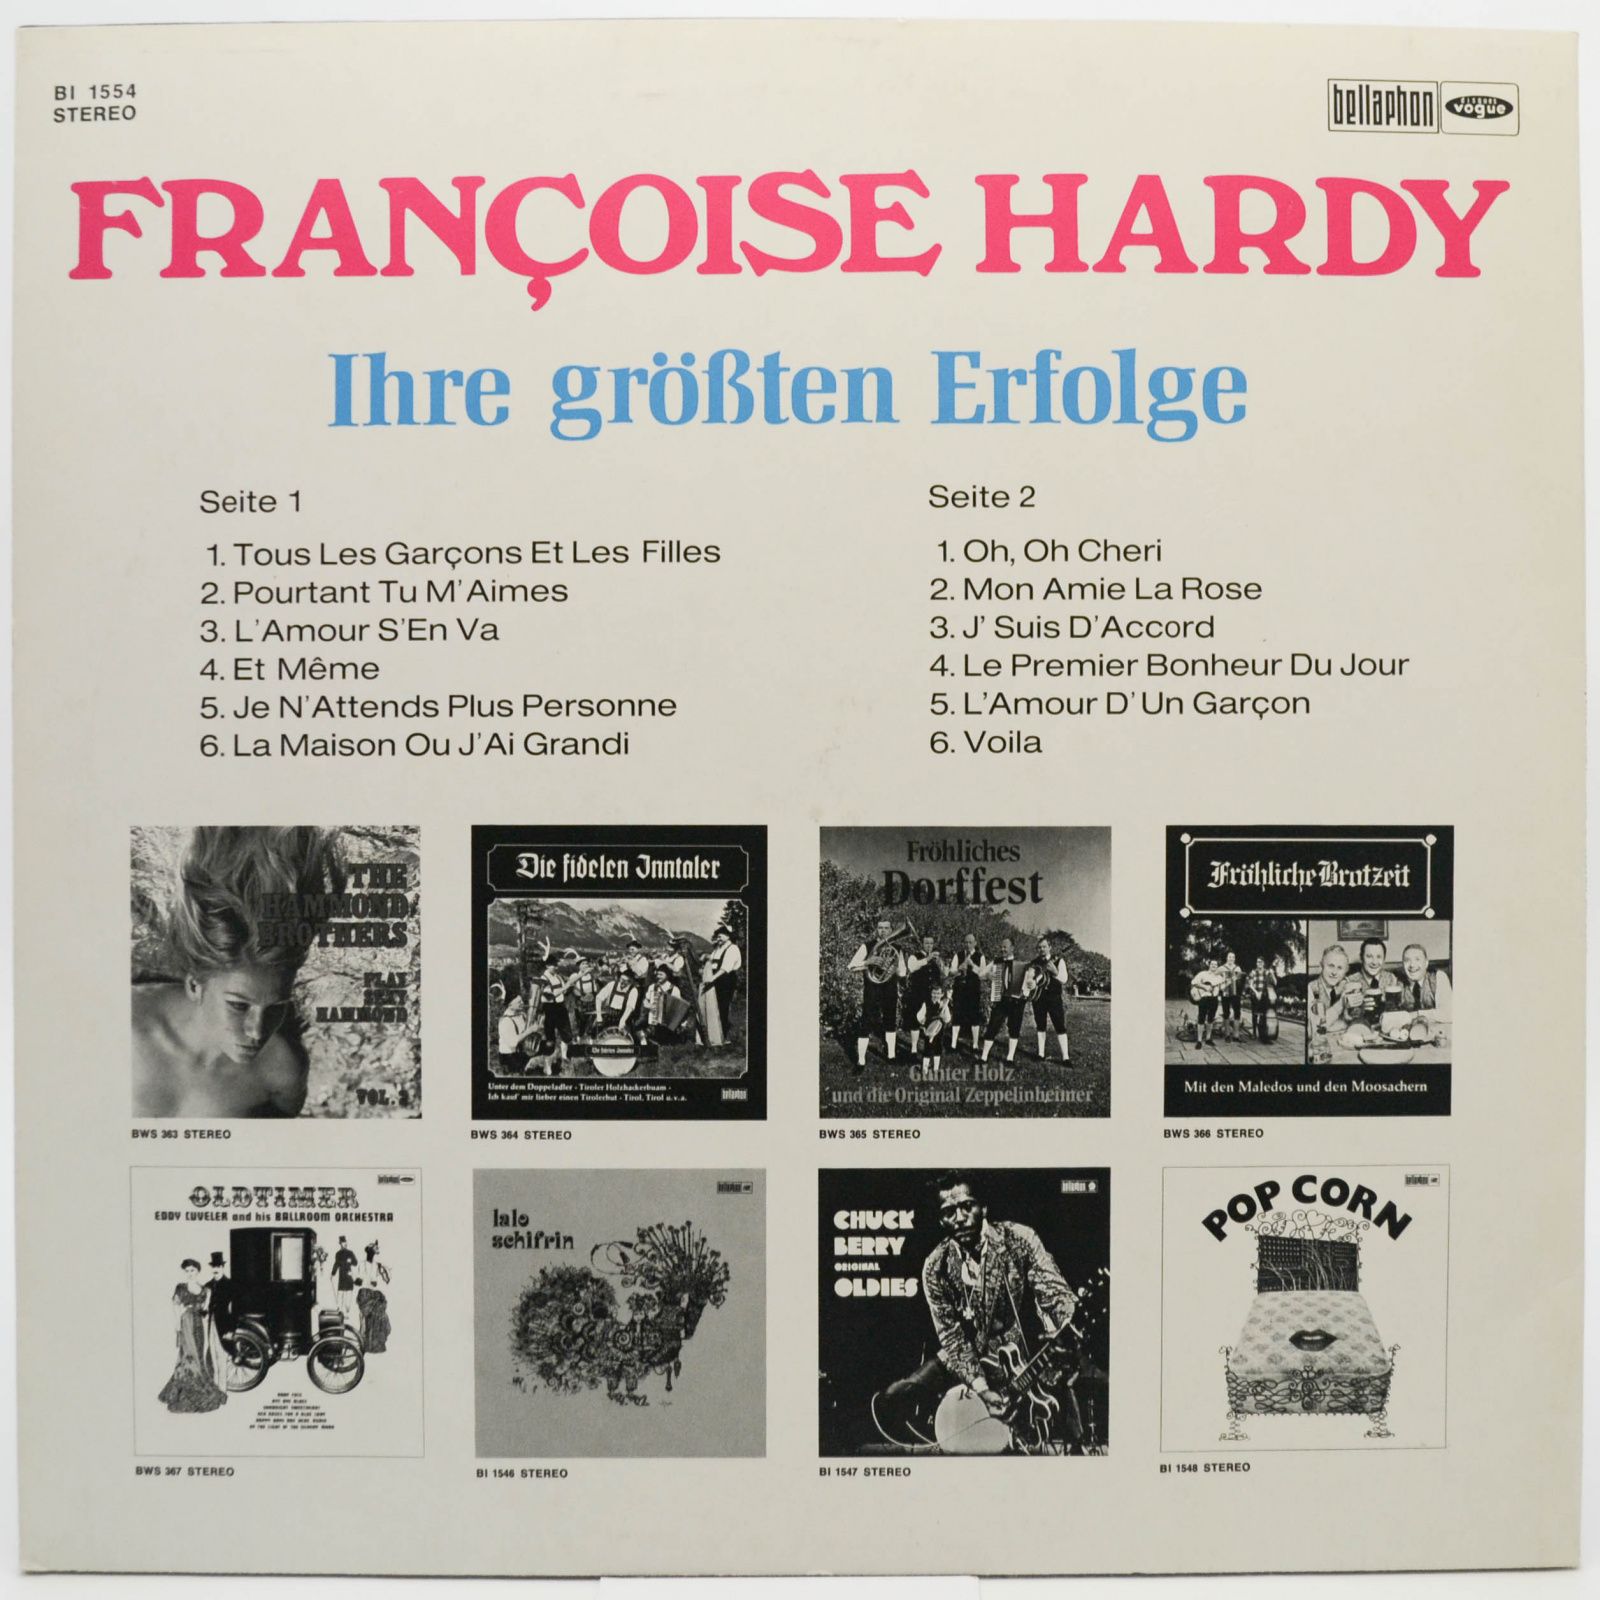 Françoise Hardy — Ihre Größten Erfolge, 1974